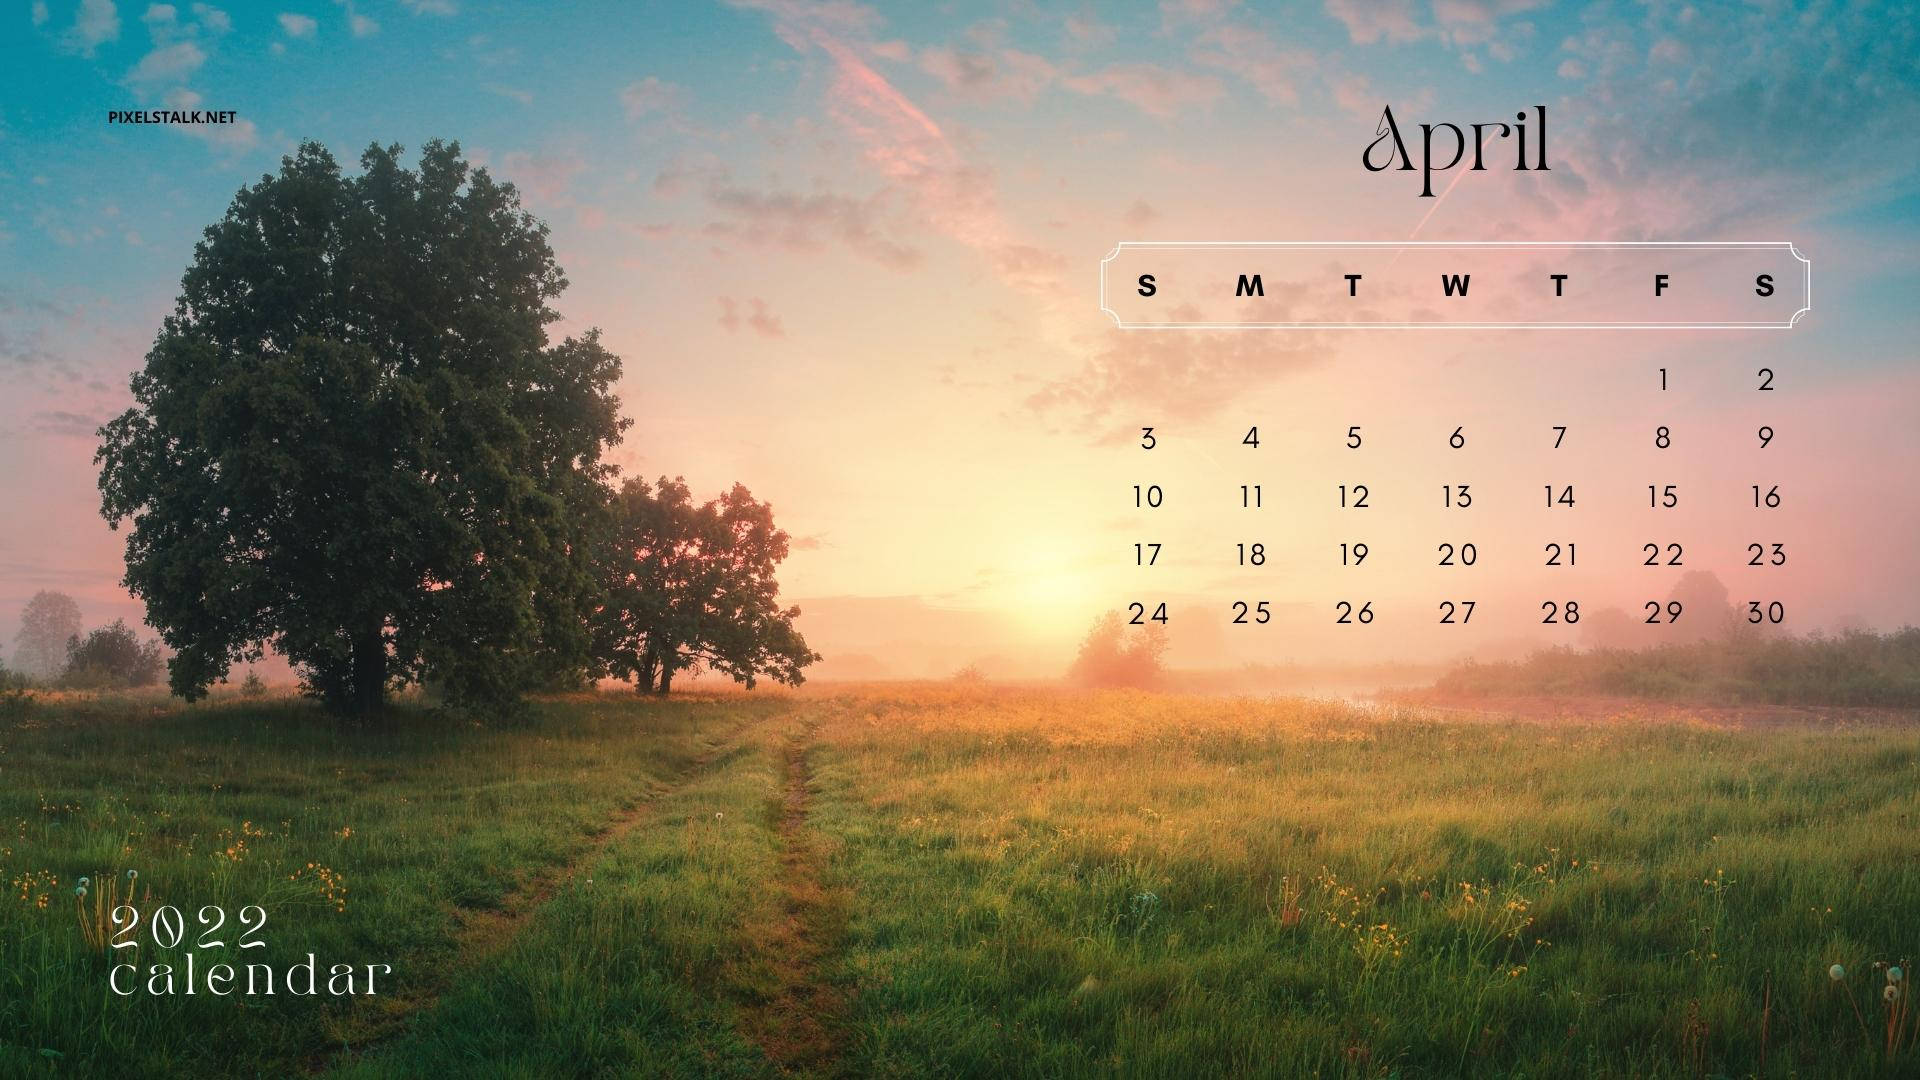 Sunset Field April 2022 Calendar Wallpaper